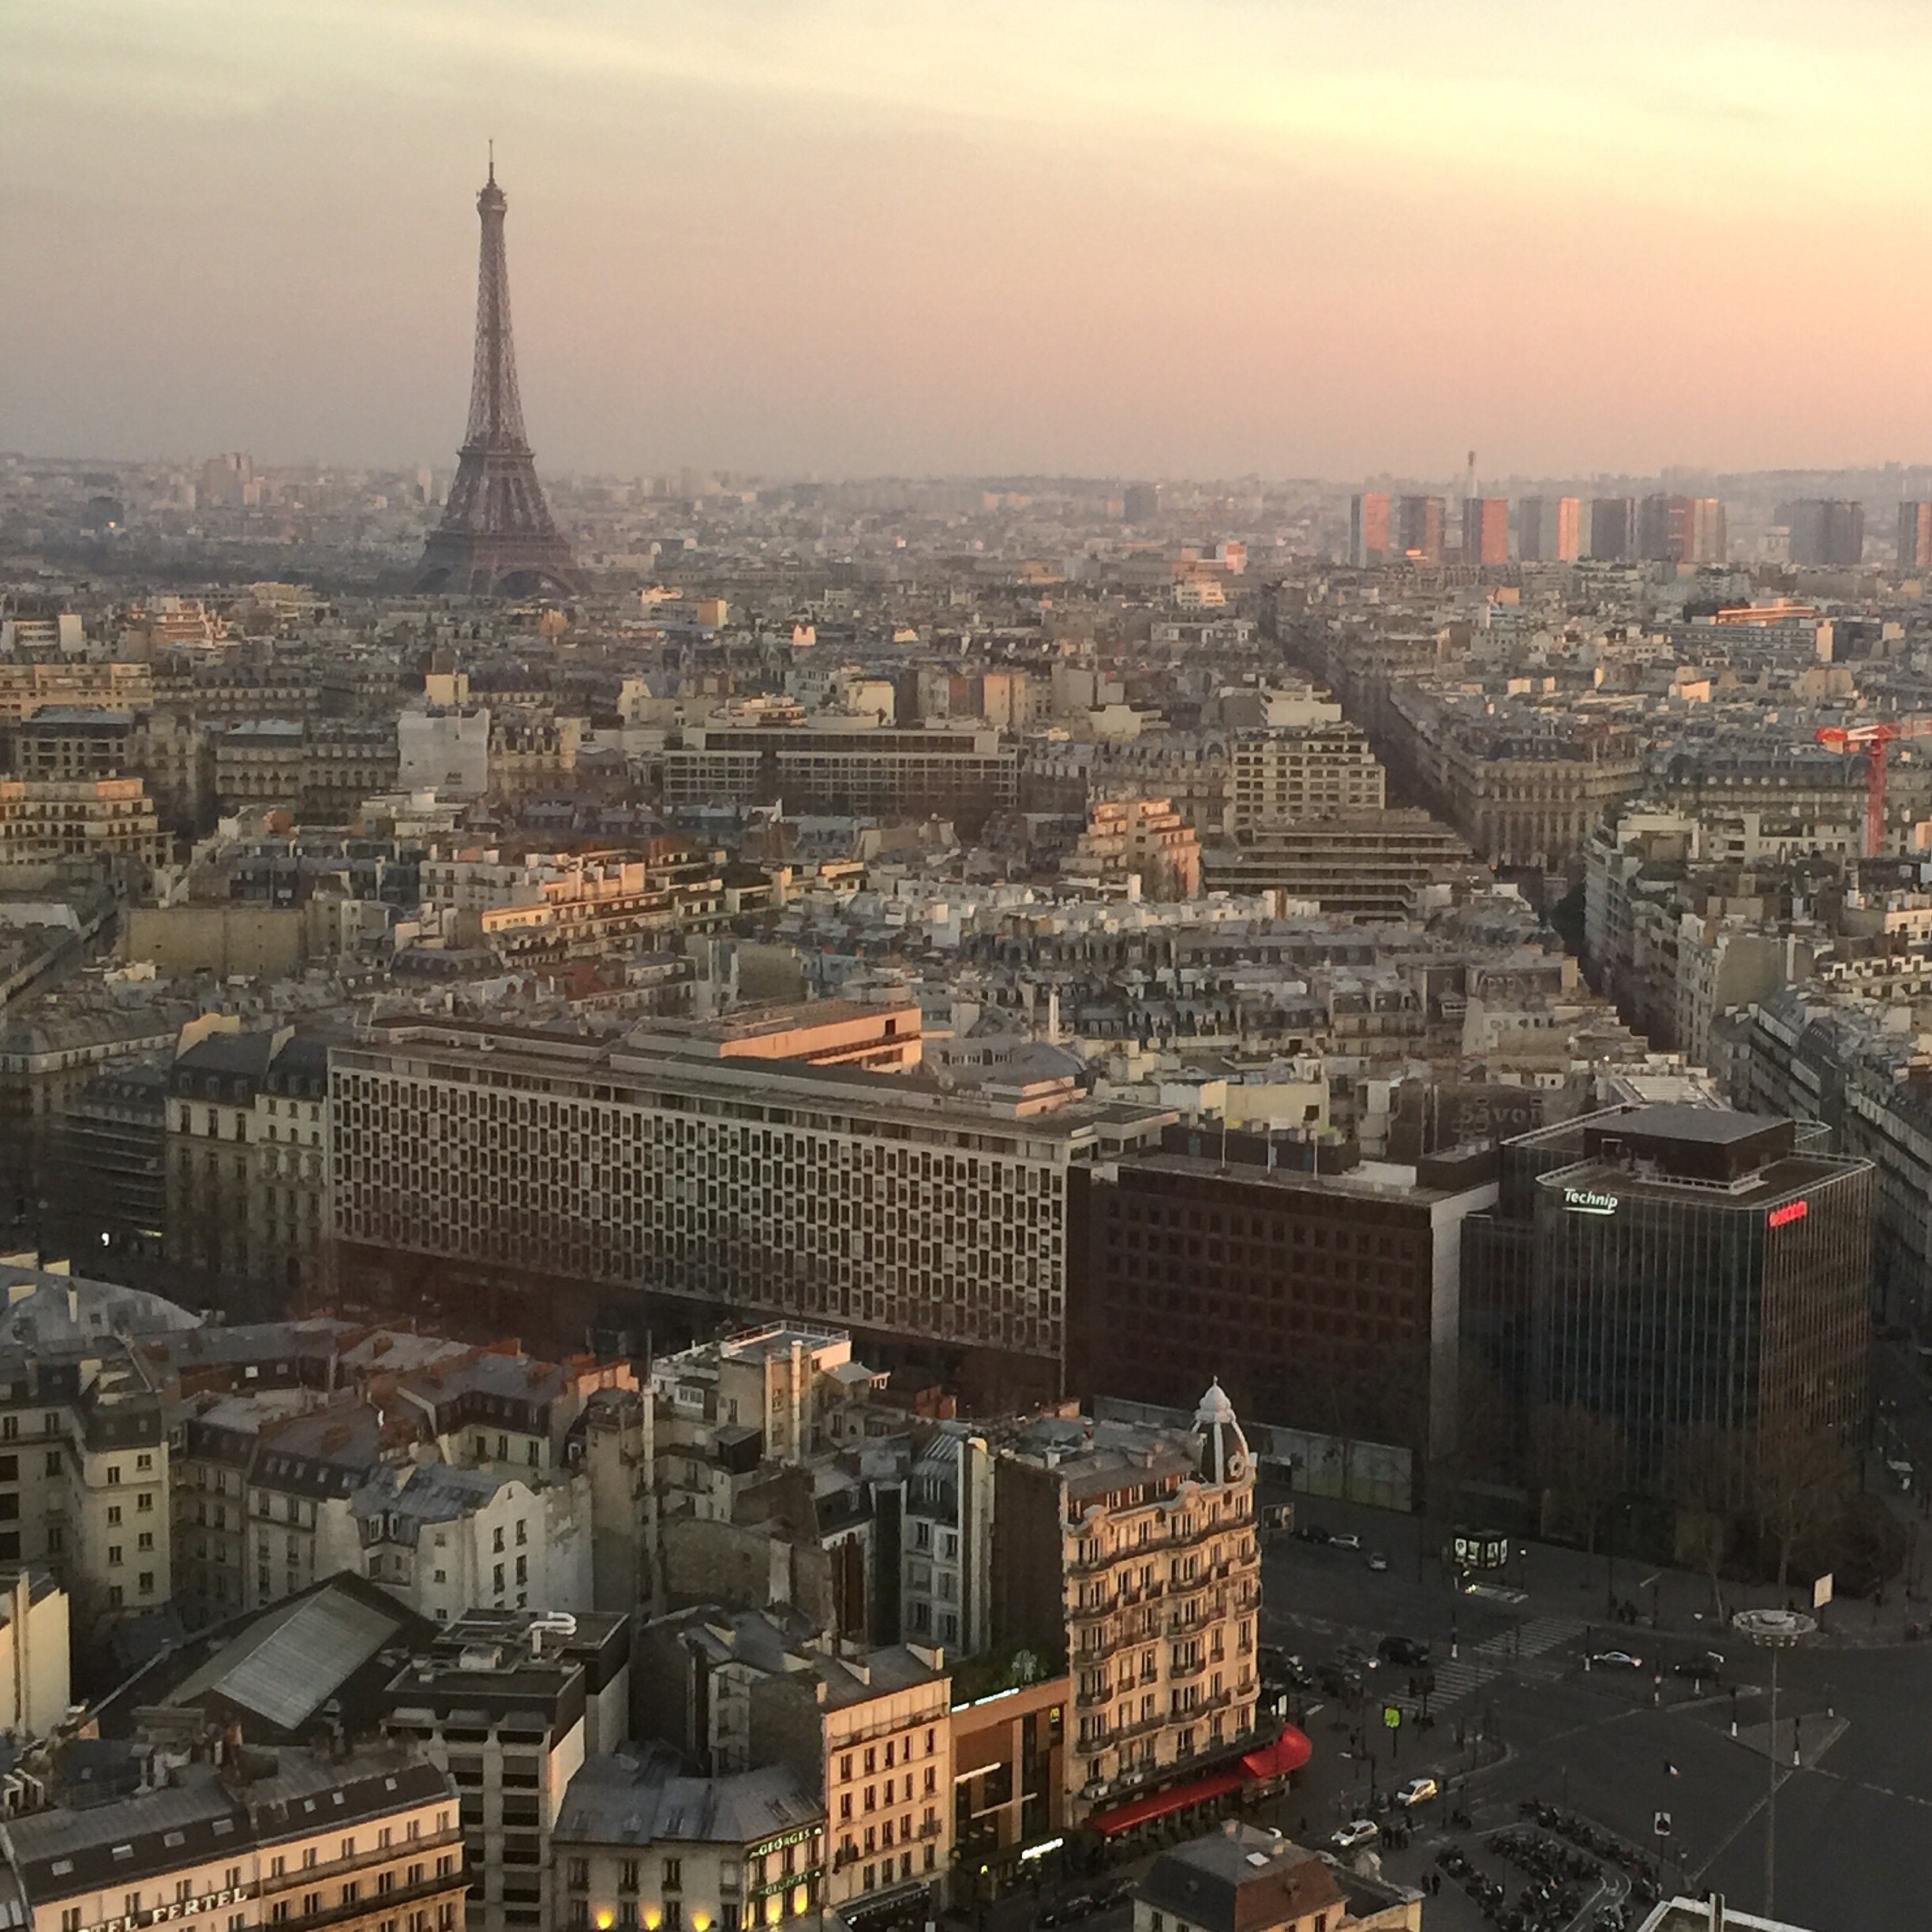 Paris at twilight, taken from 34th floor of the Hyatt Etoile. 